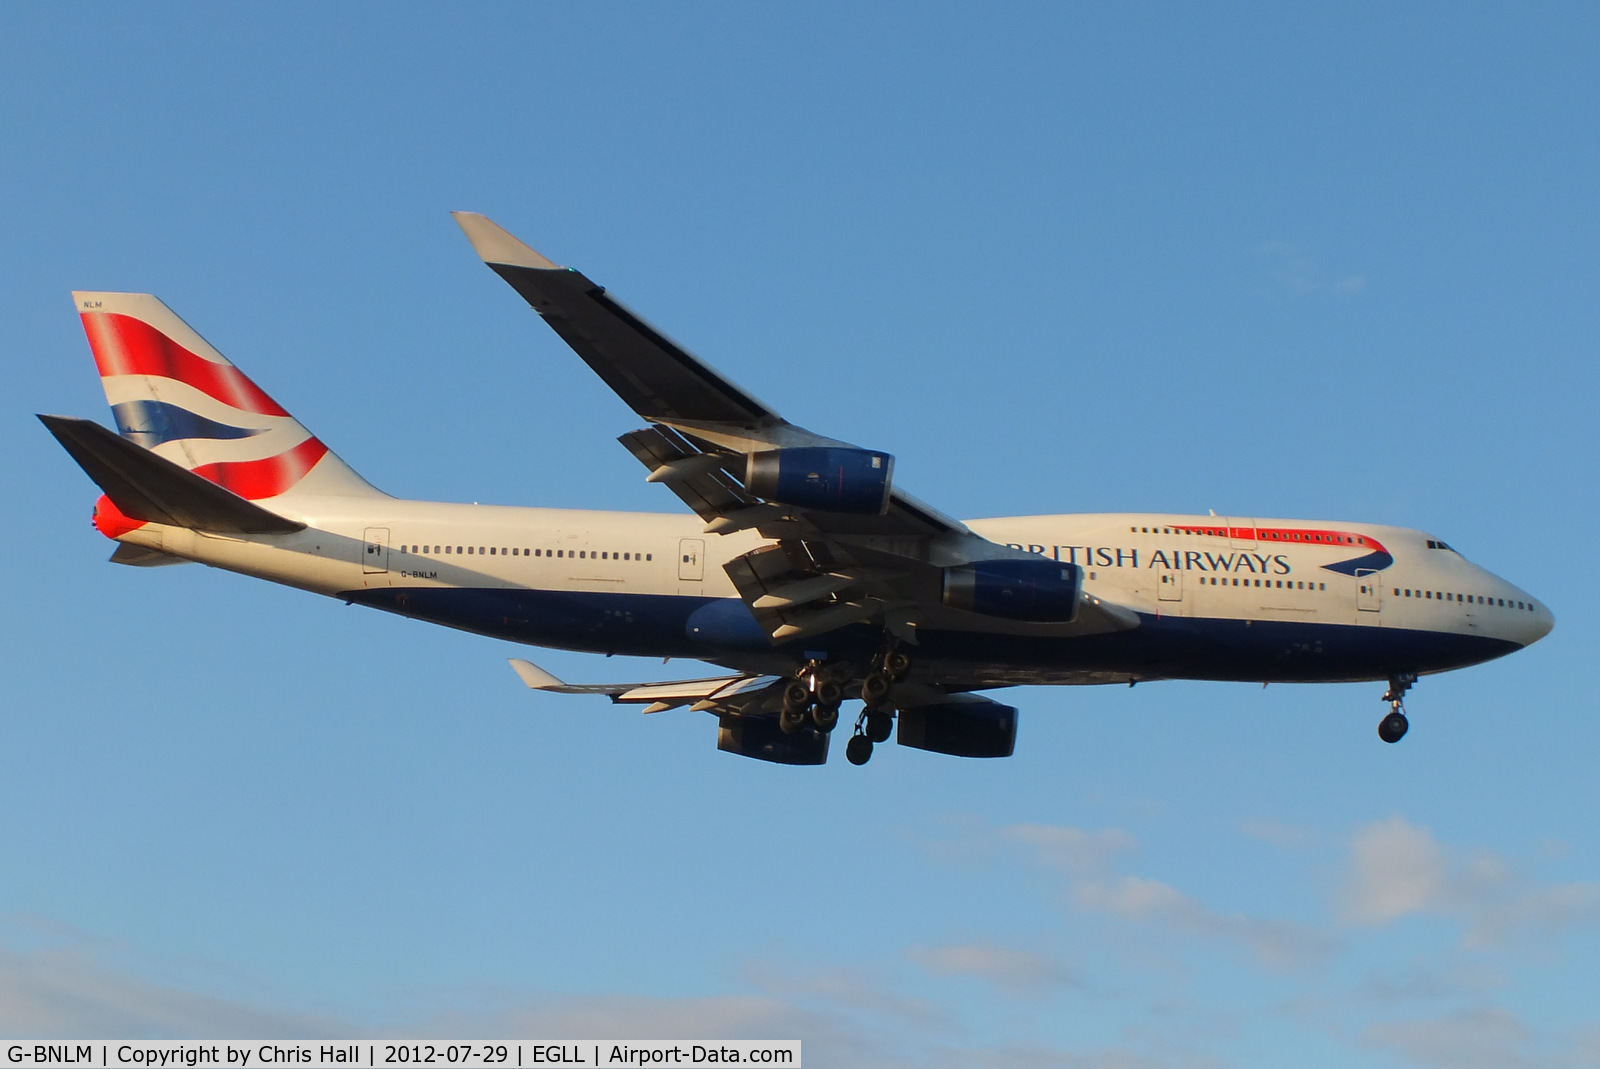 G-BNLM, 1990 Boeing 747-436 C/N 24055, British Airways